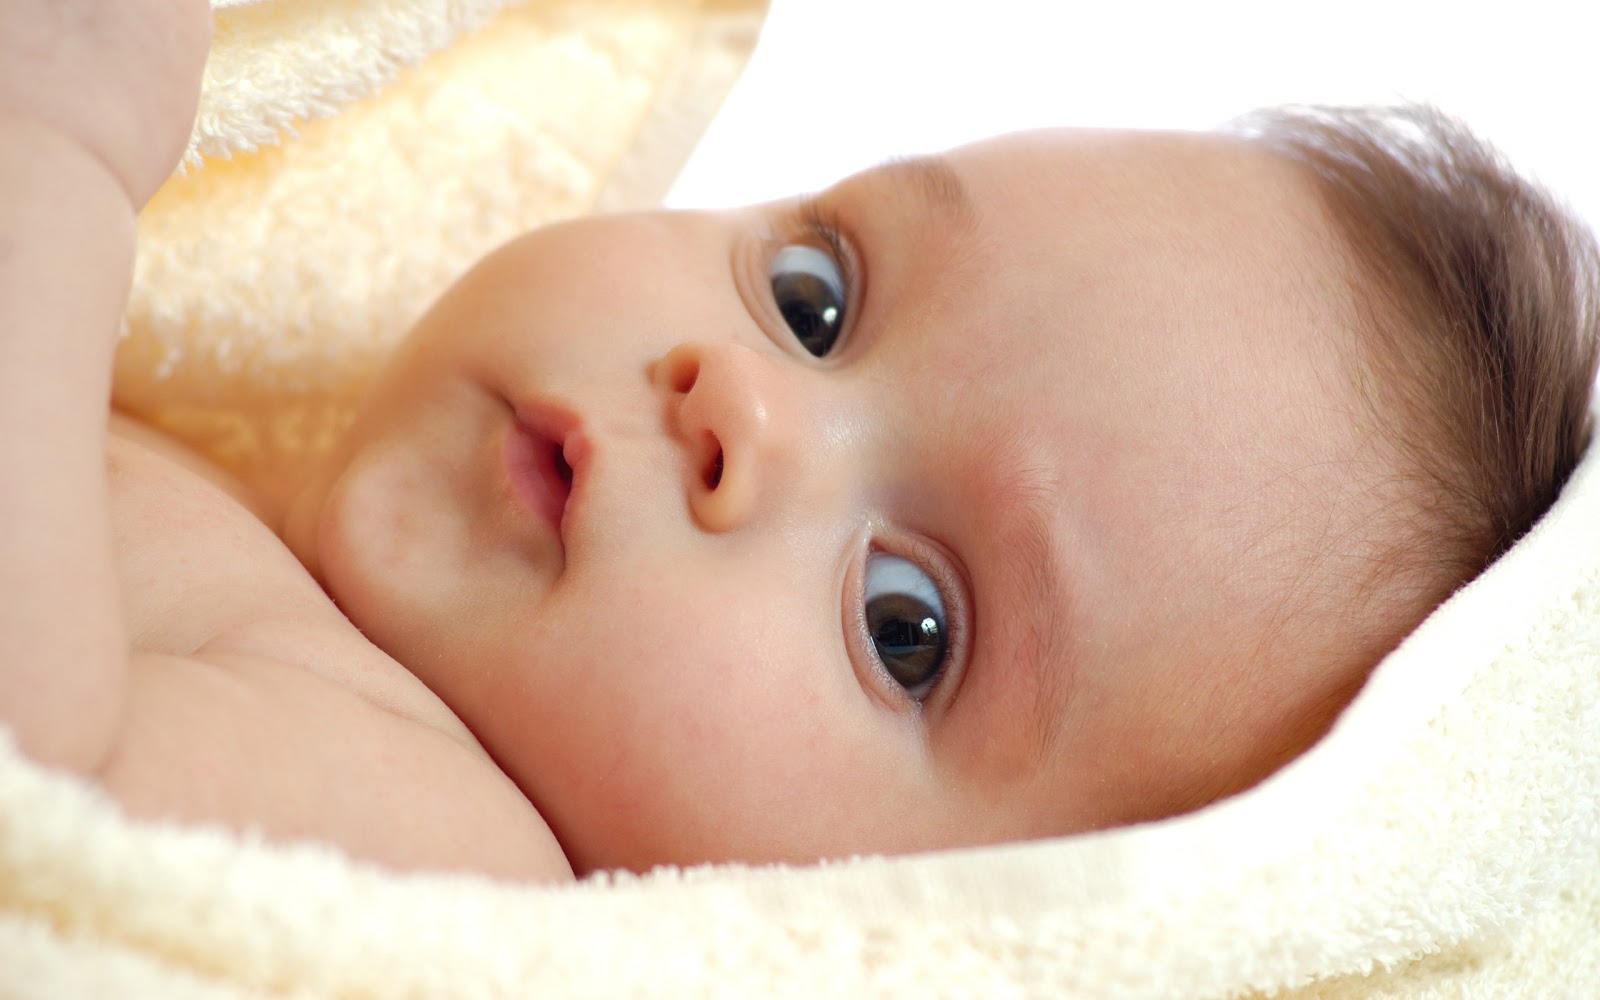 Koleksi Gambar Bayi - Gambar Bayi Lucu